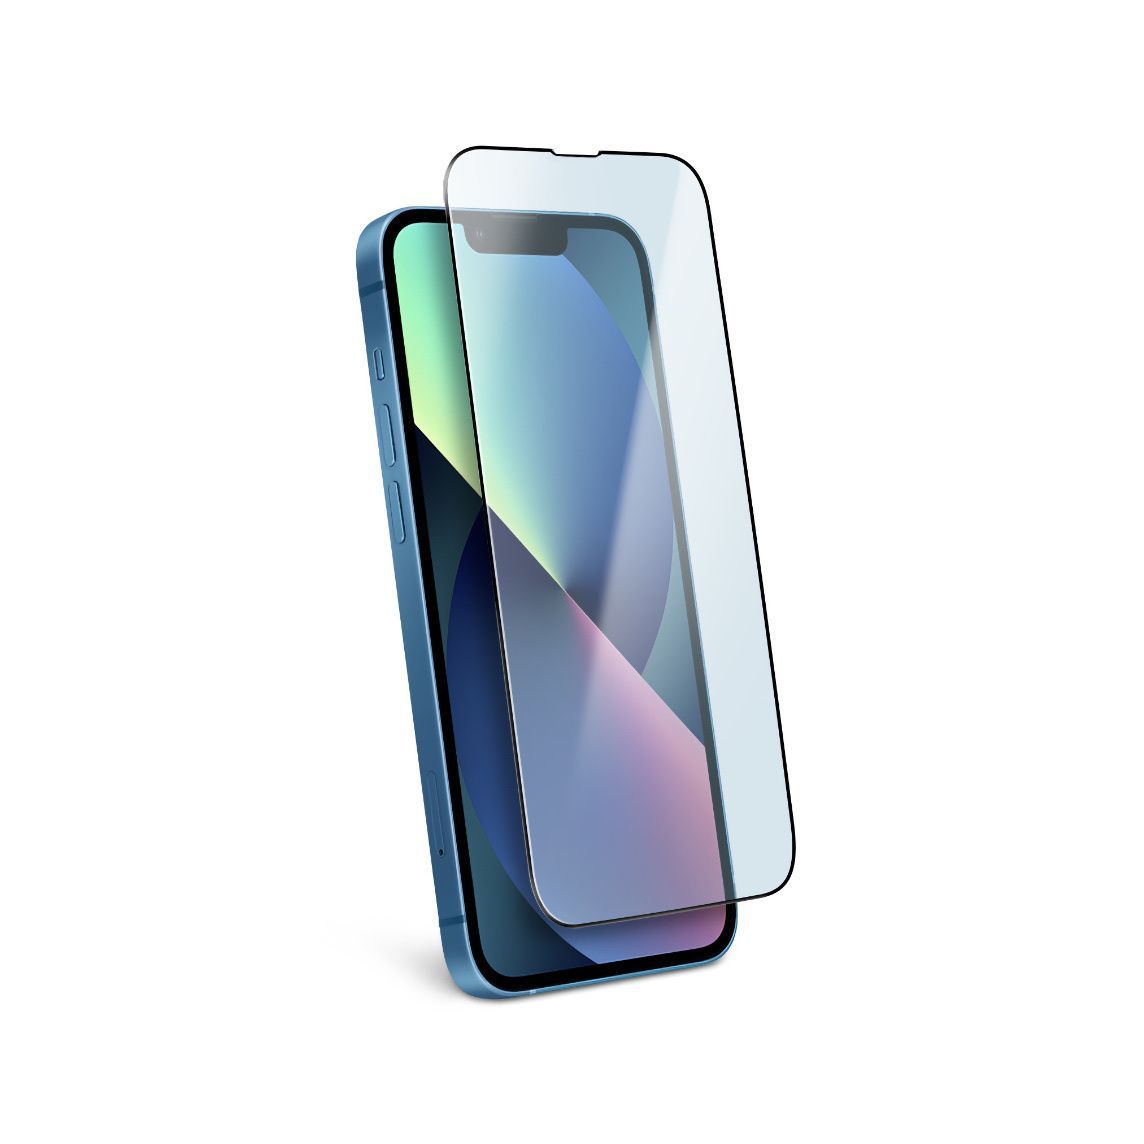 Защитное стекло для Apple iPhone 13 mini (Эпл Айфон 13 мини) с олеофобным  покрытием, не мешает работе датчиков и фронтальной камере, легко наклеить,  прозрачное с черной рамкой - купить с доставкой по